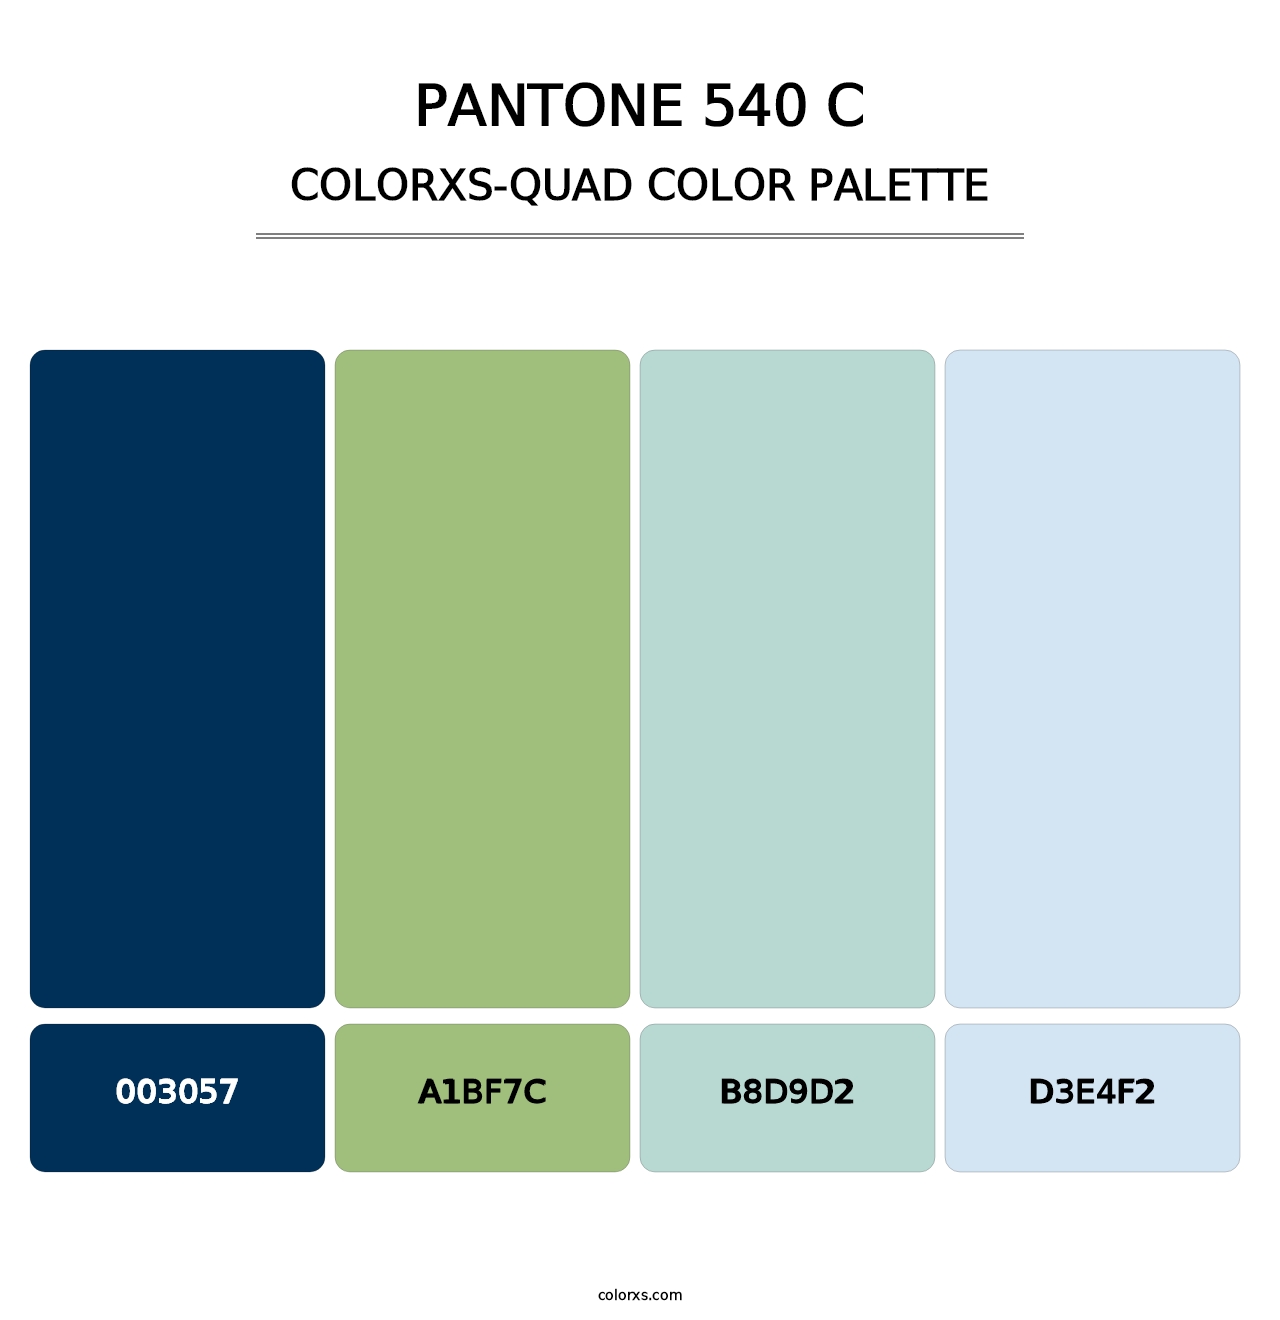 PANTONE 540 C - Colorxs Quad Palette